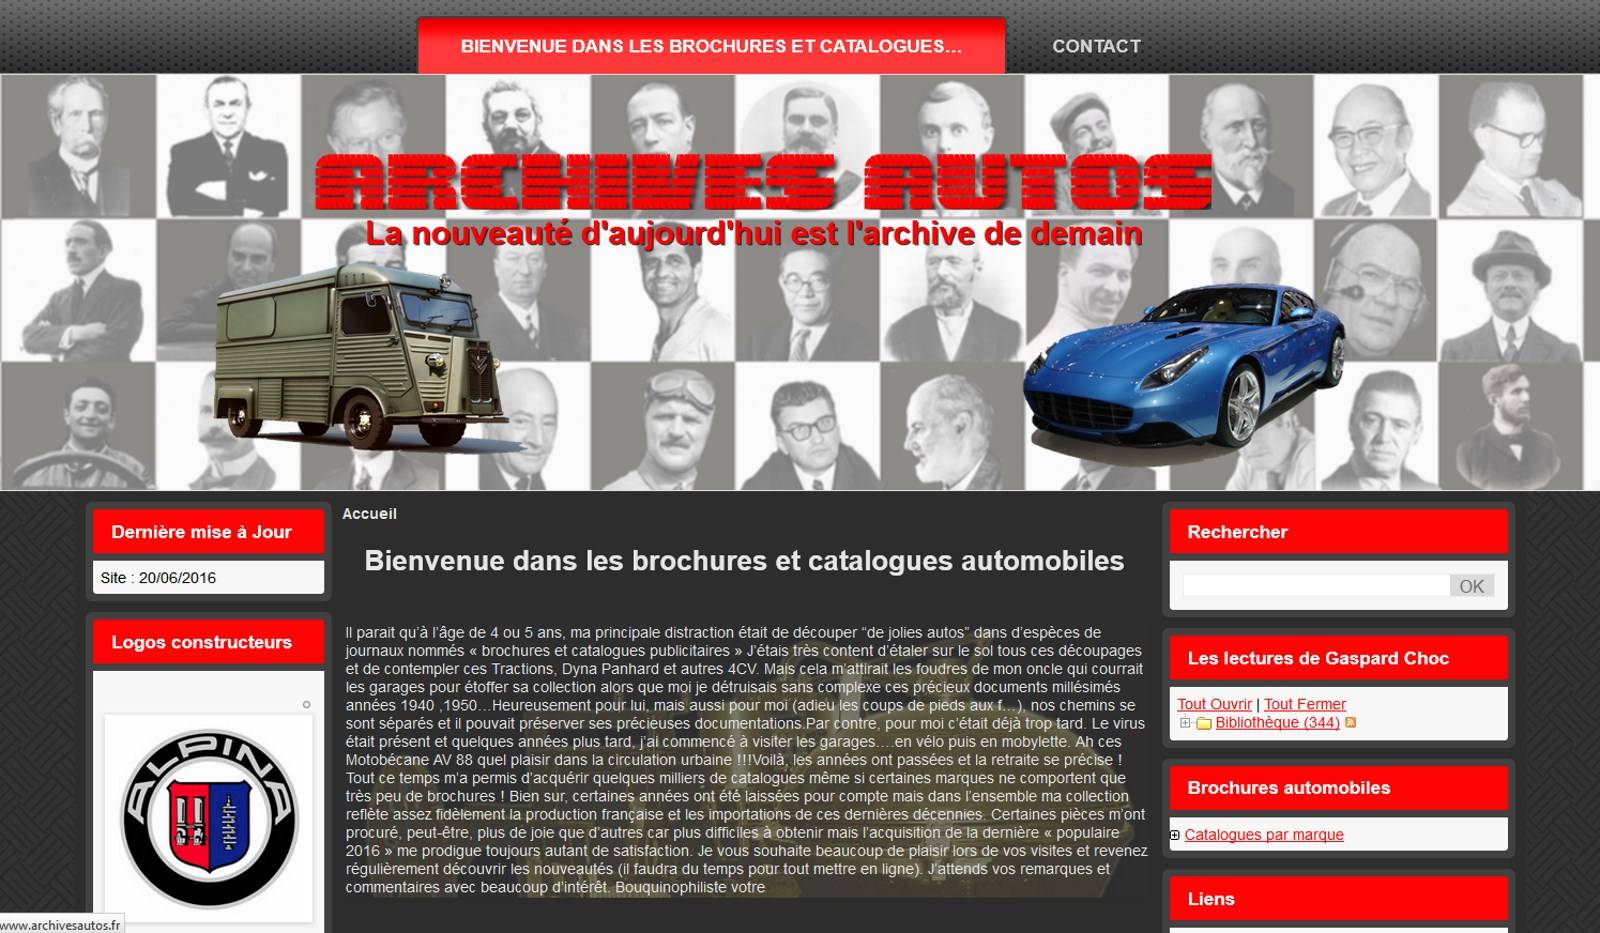 Archives Autos - Brochures et catalogues automobiles